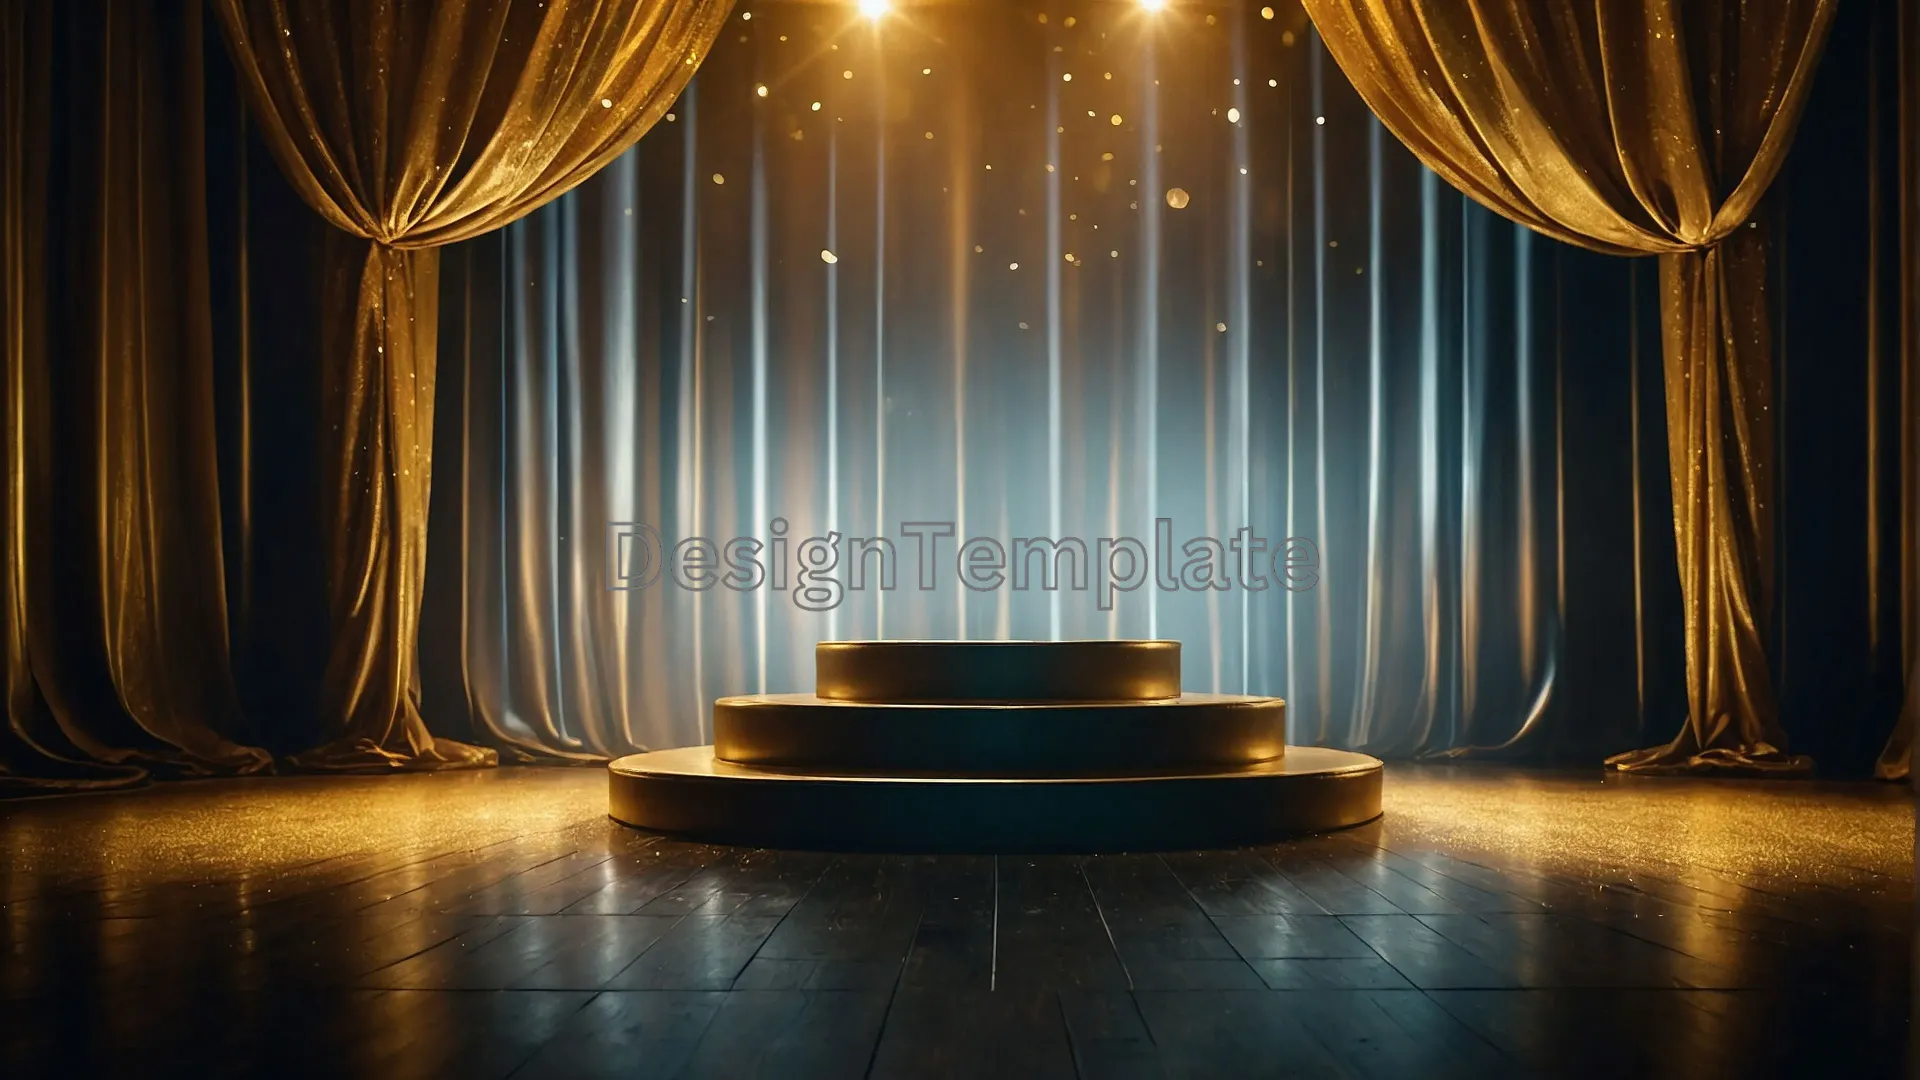 Captivating Image Award Show Stage Enhanced with Fresh Golden Fabric image